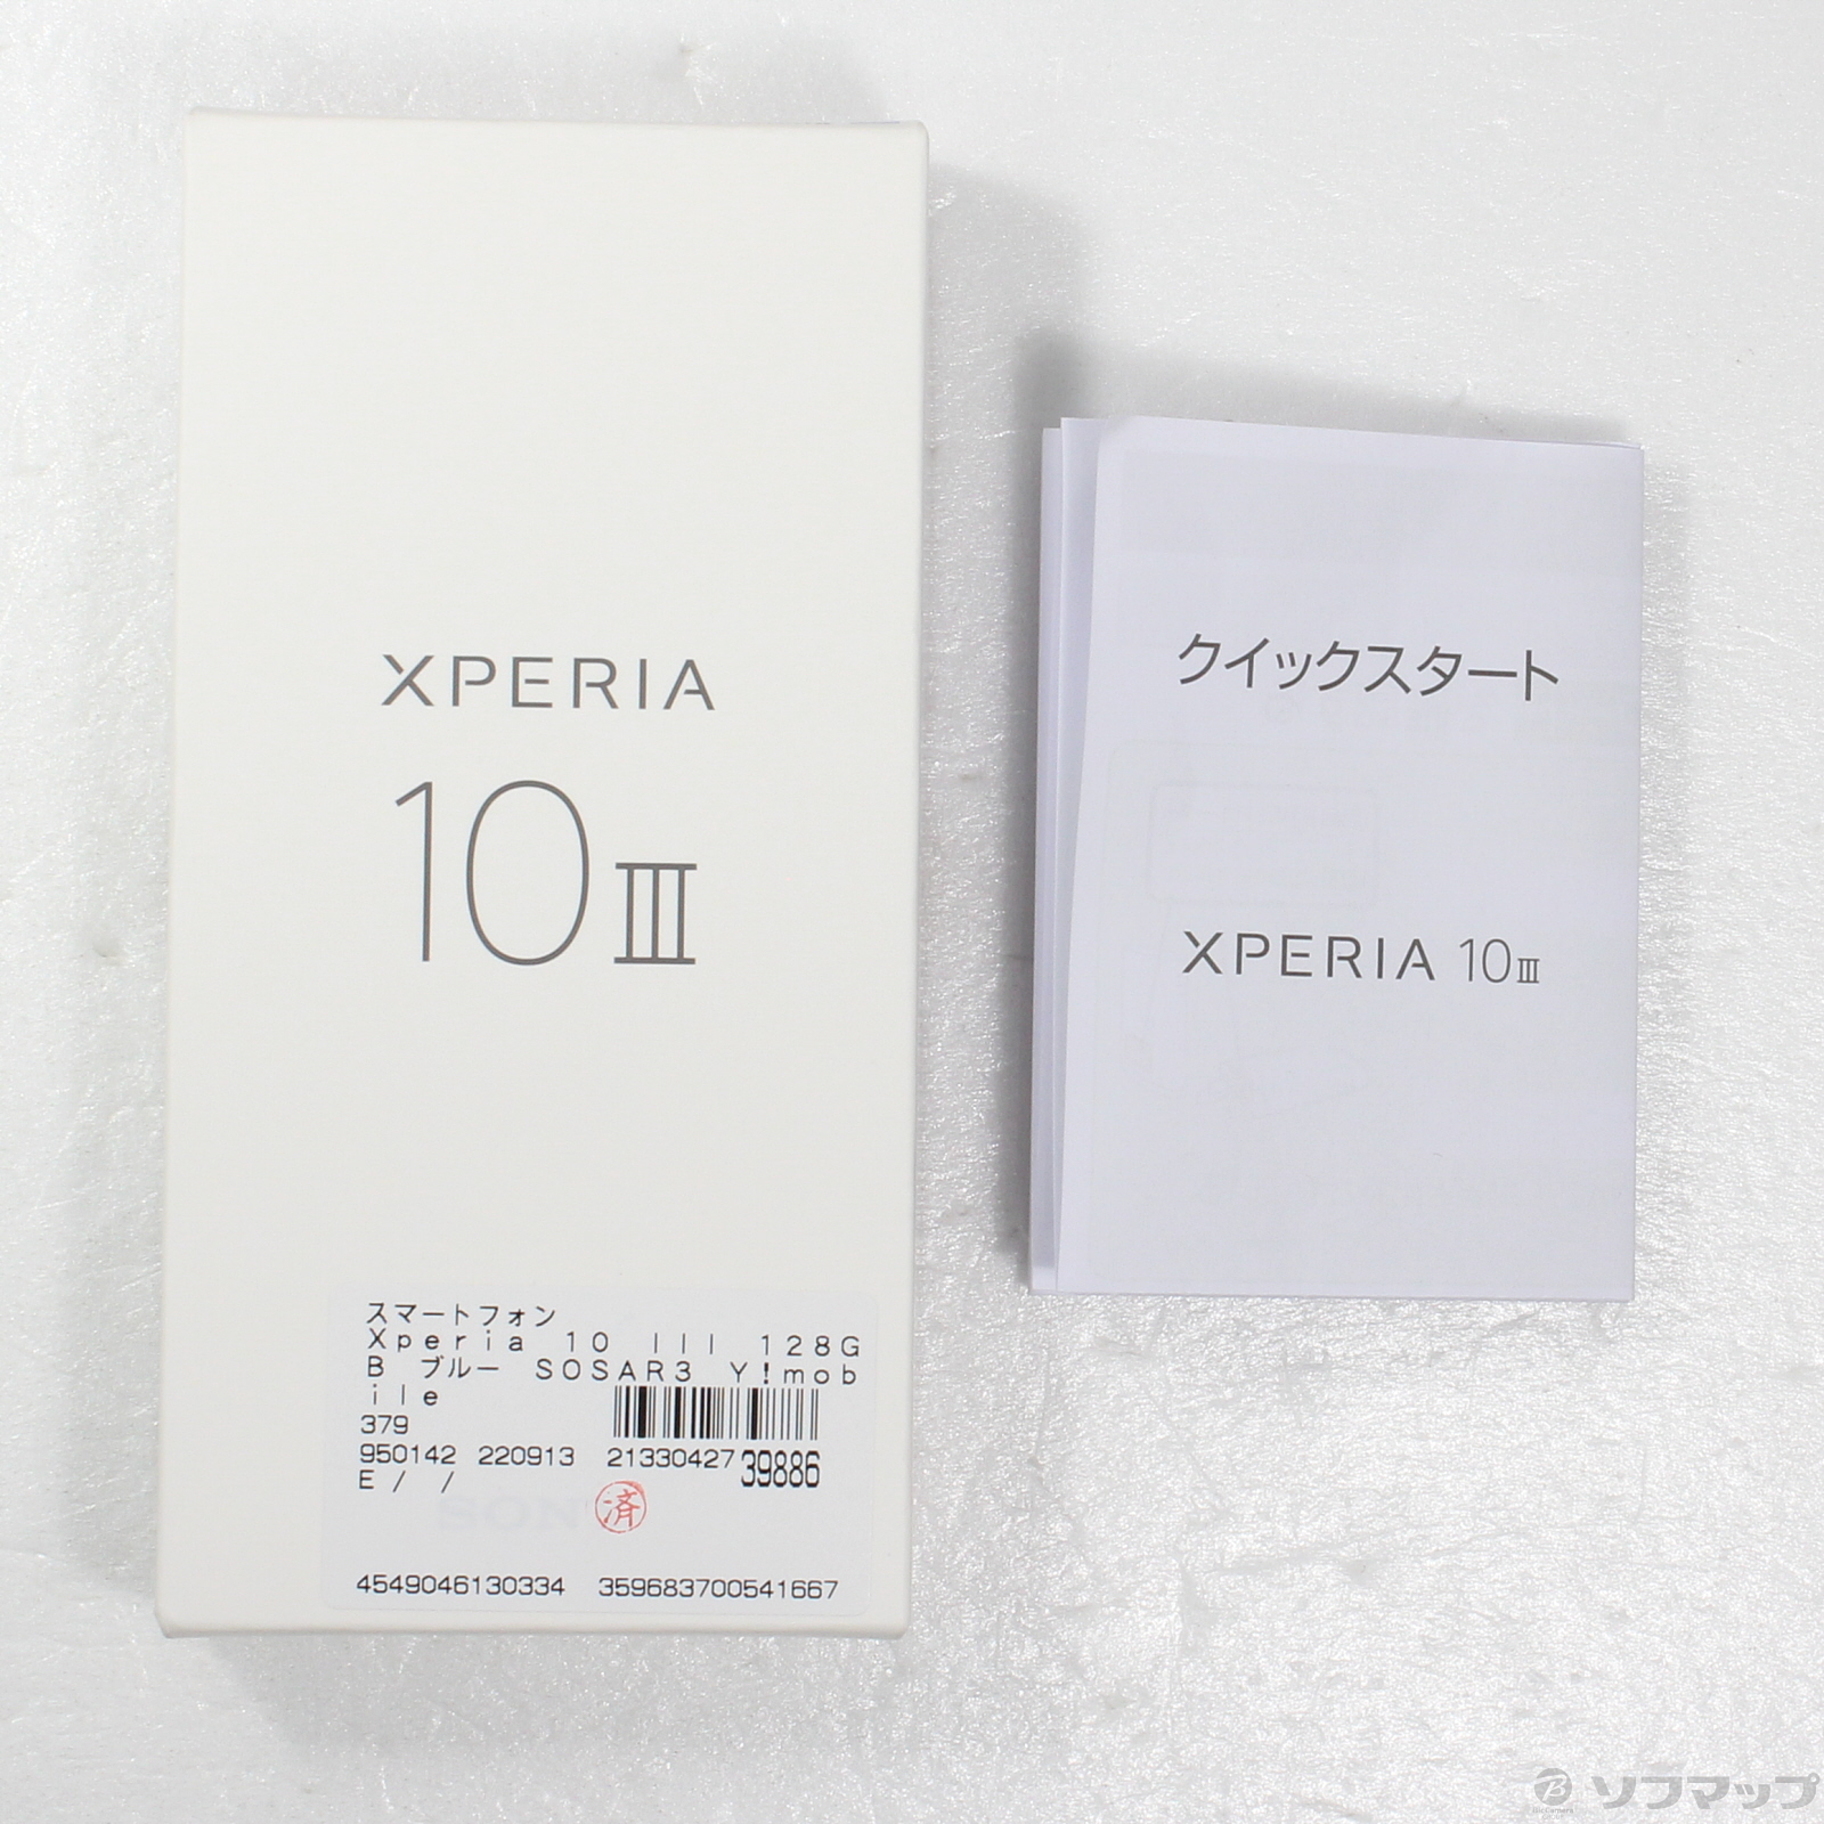 中古】Xperia 10 III 128GB ブルー SOSAR3 Y!mobile [2133042739886